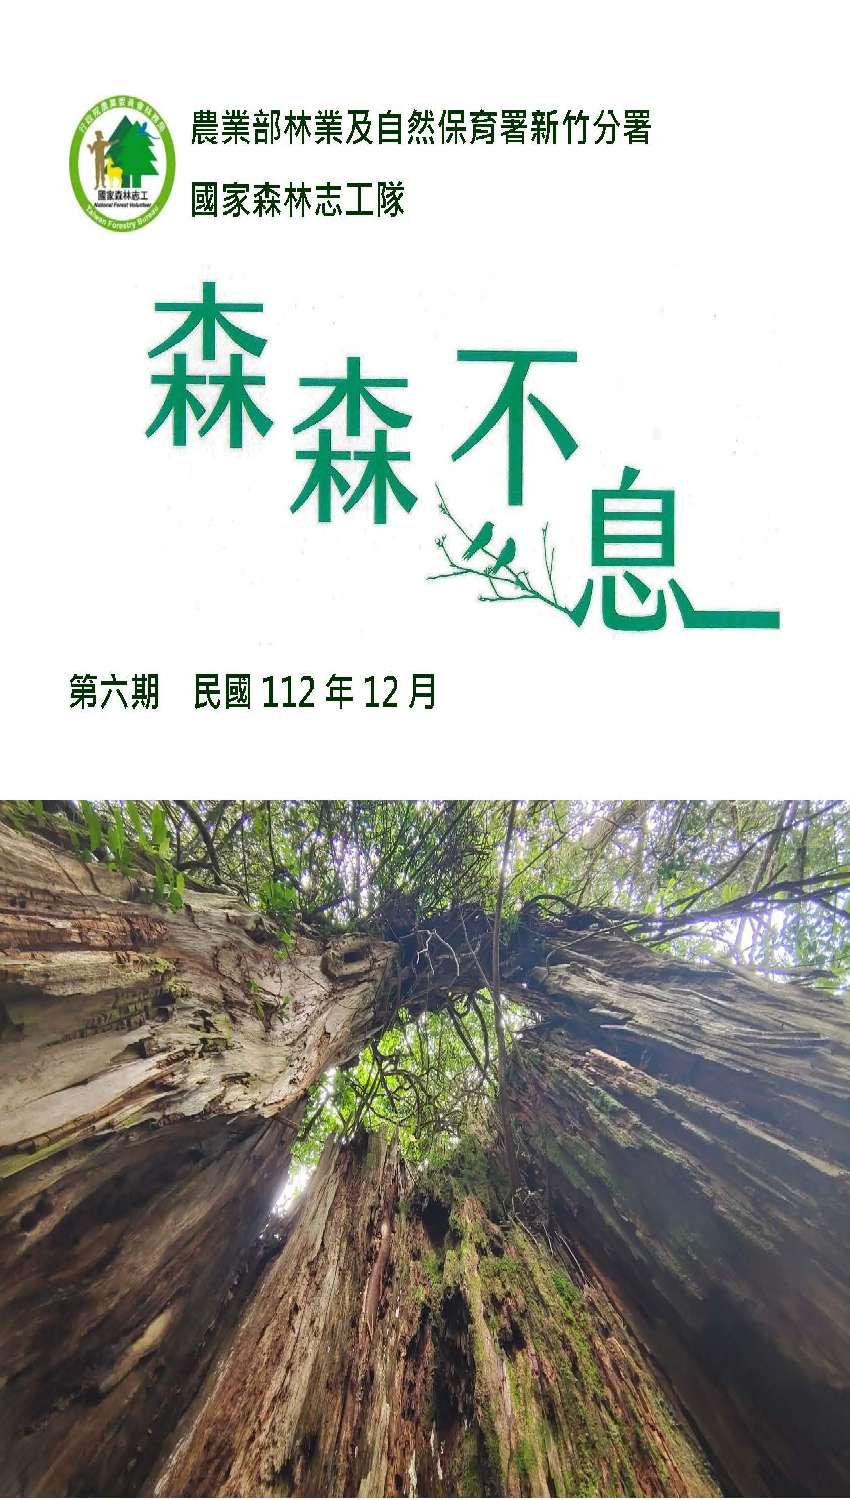 林業保育署新竹分署【